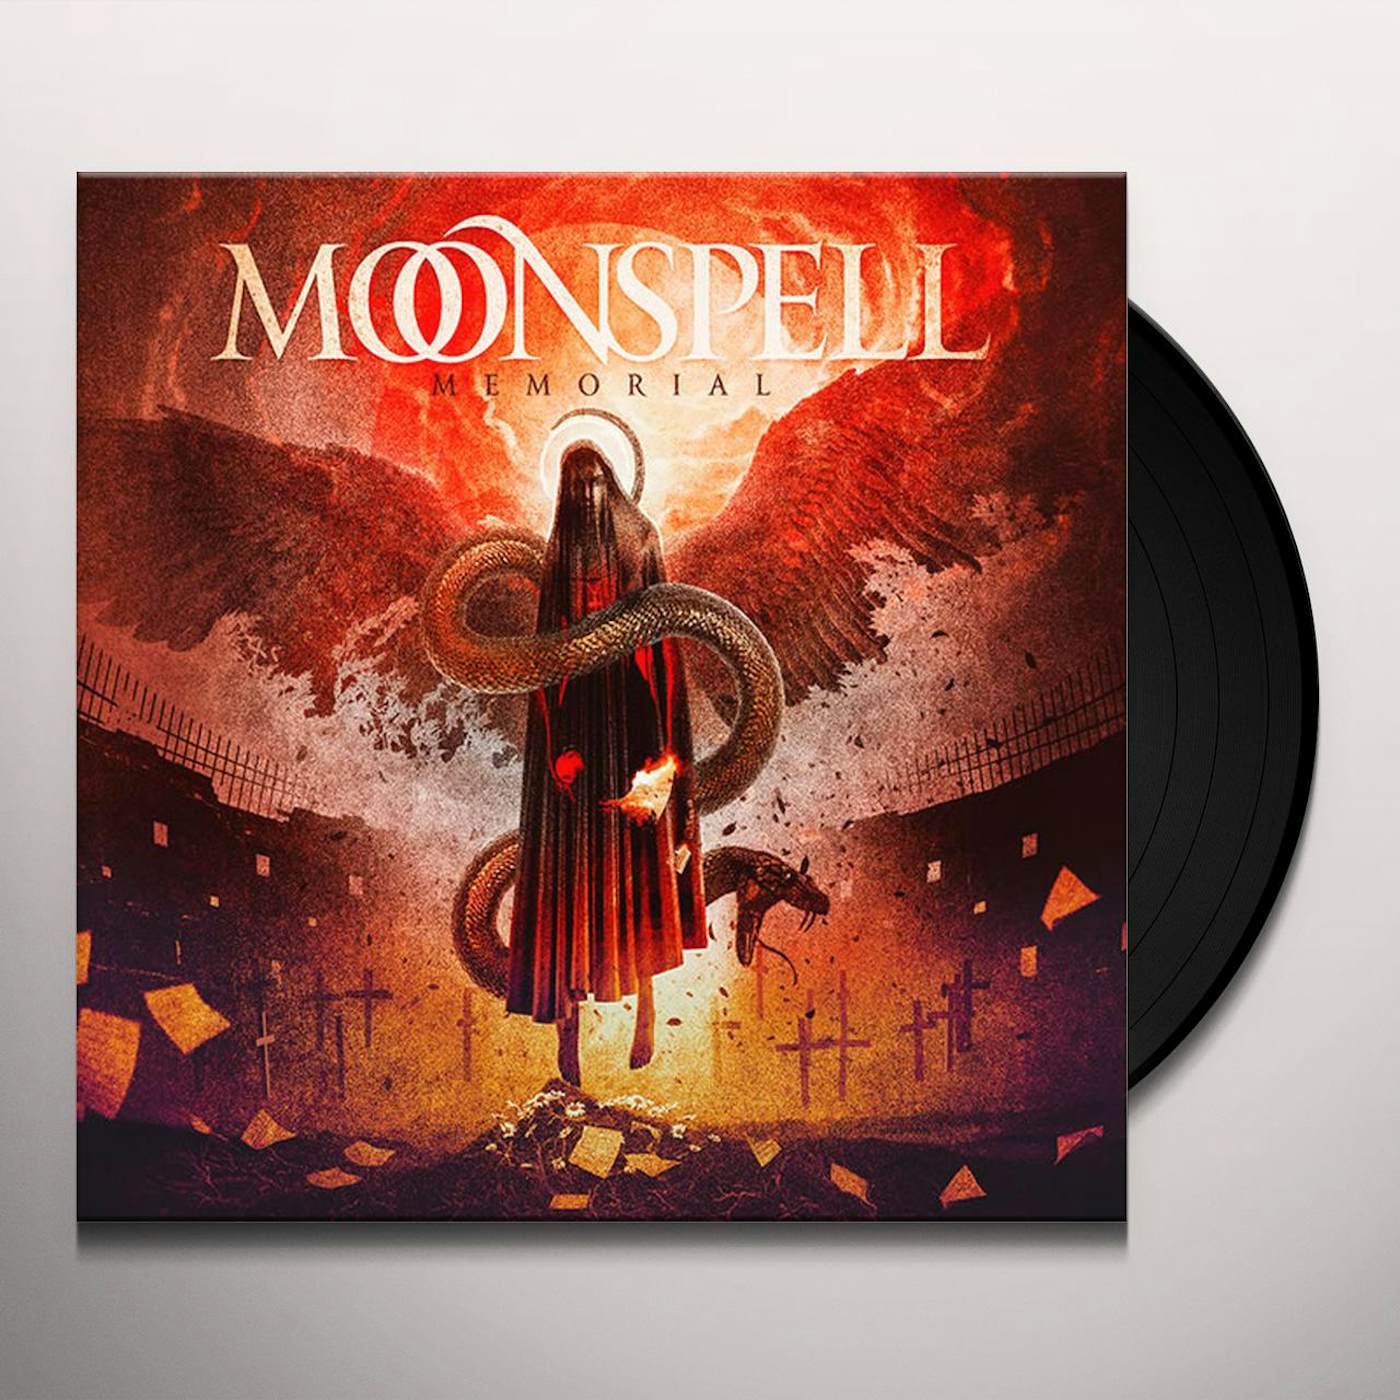 Moonspell Memorial Vinyl Record